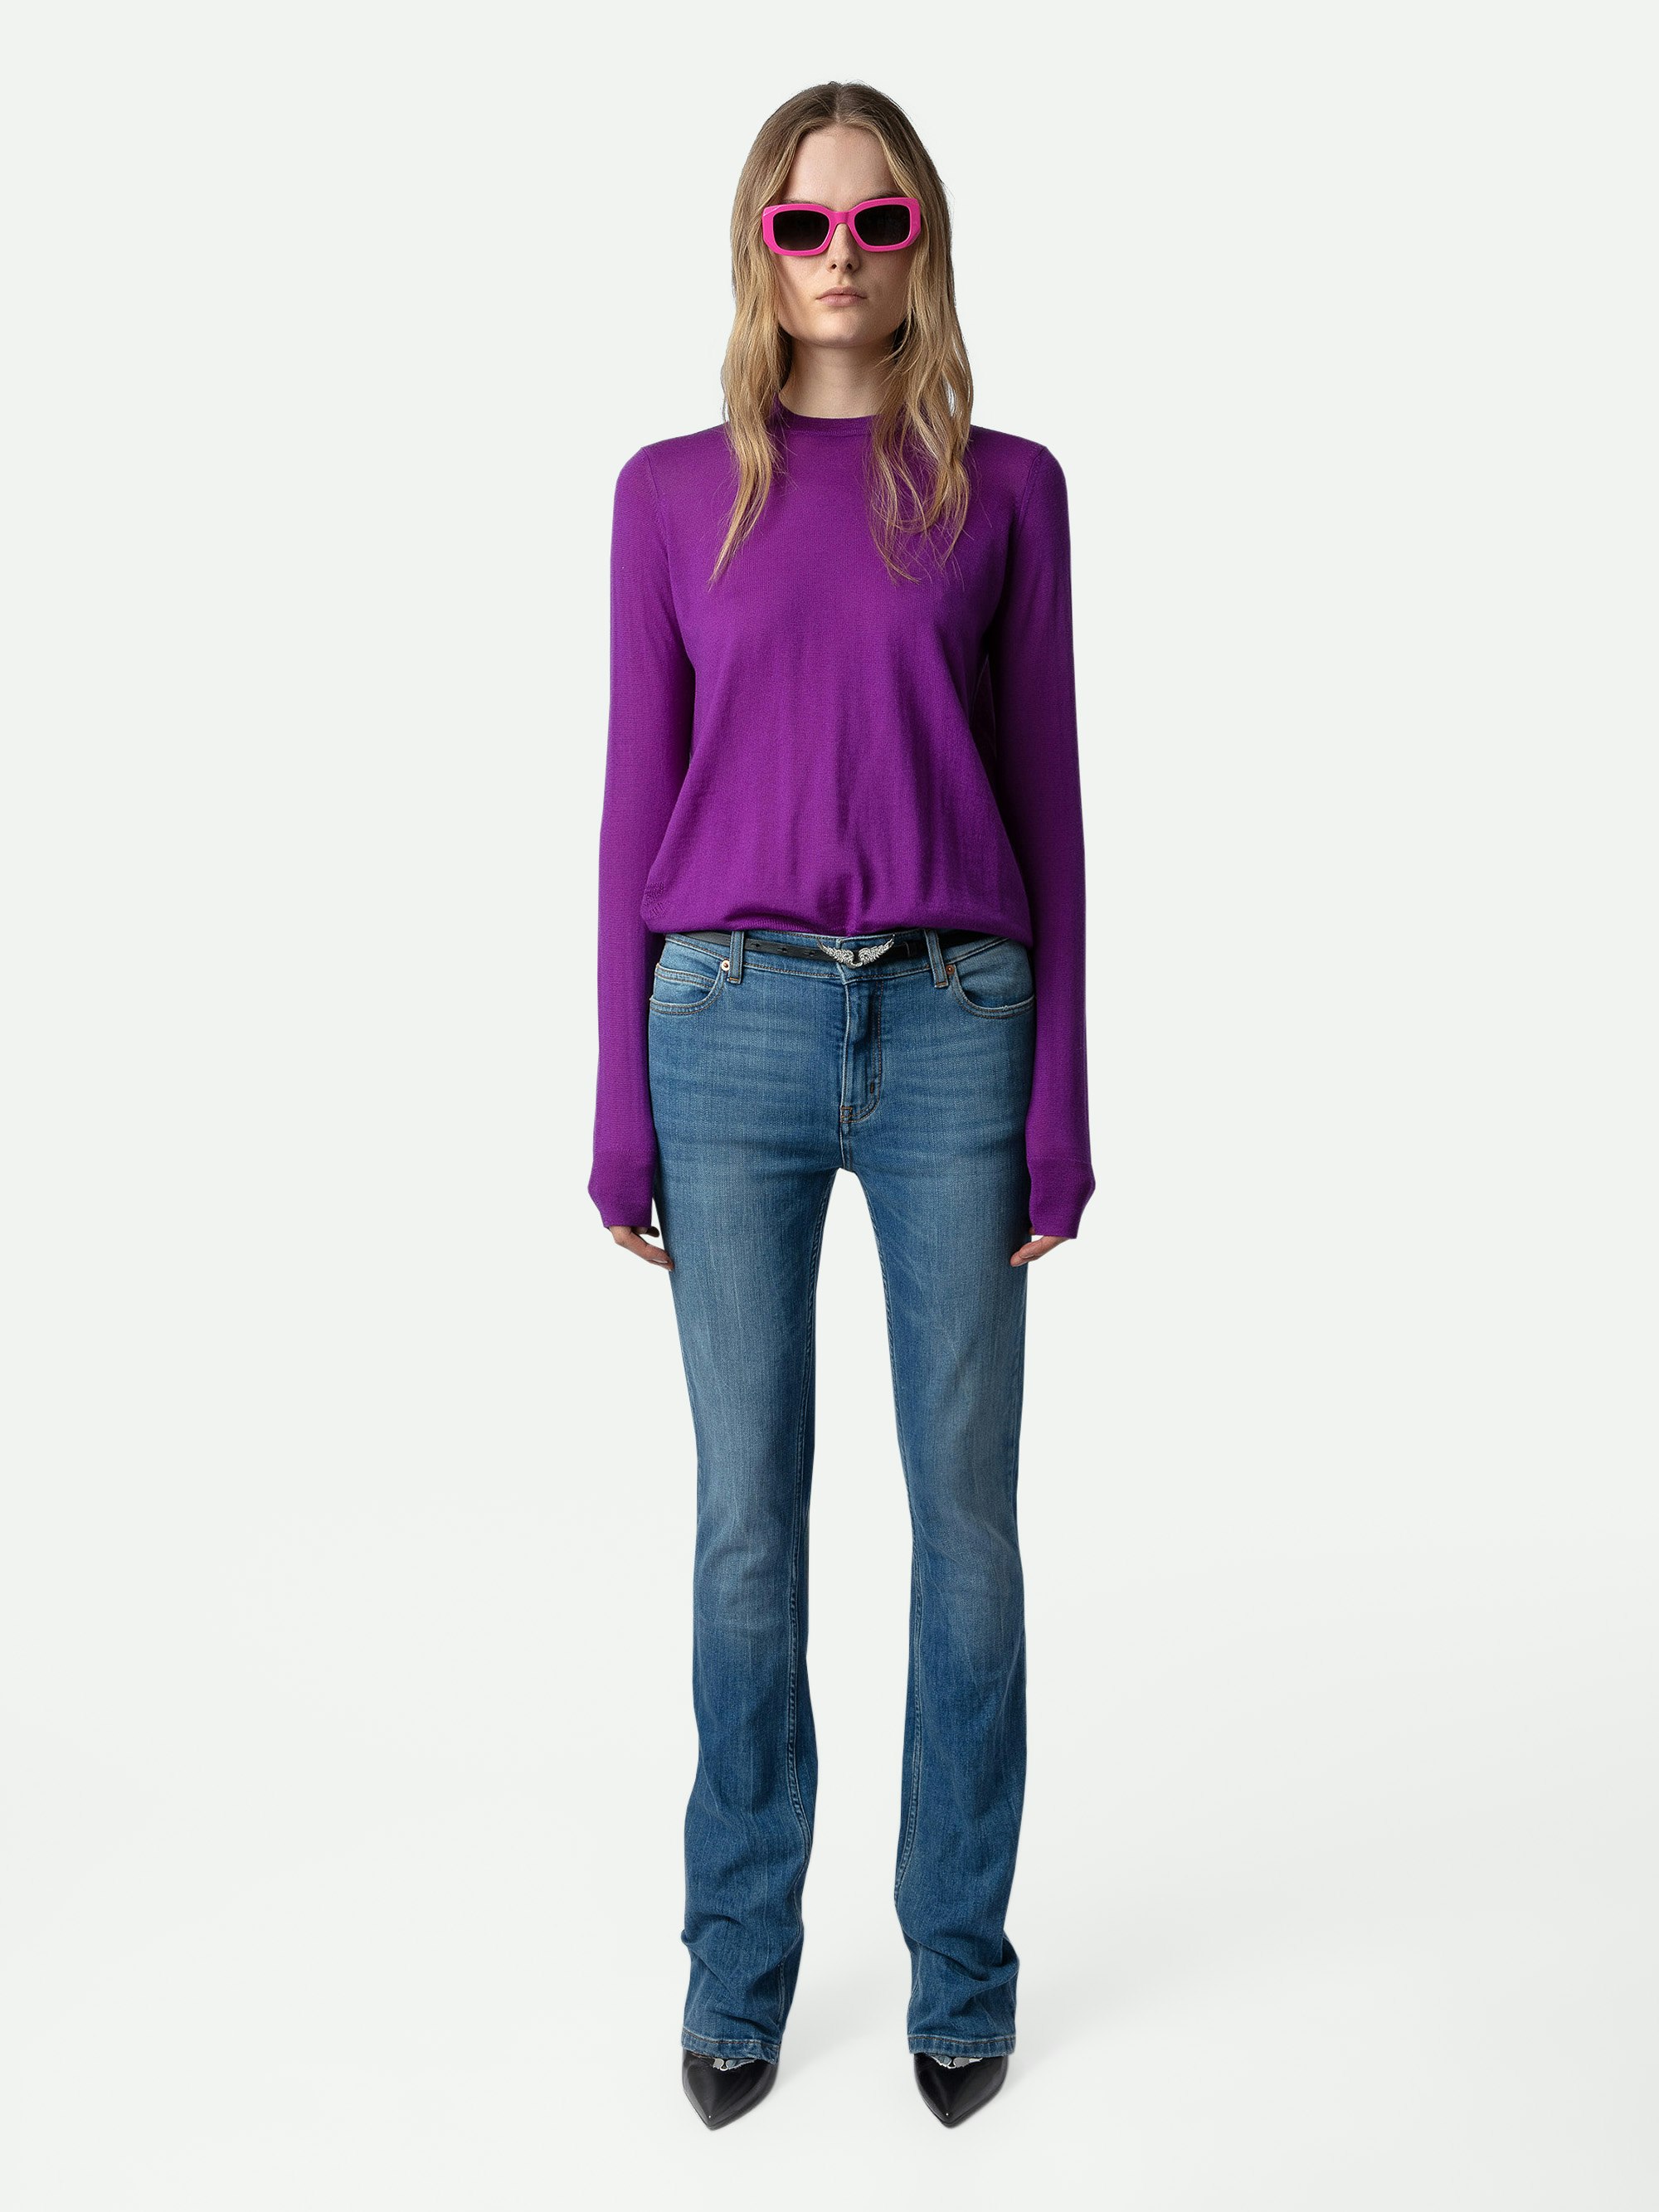 Jersey Emma 100% Lana Merina - Jersey violeta de 100% lana merina con cuello redondo, mangas largas y espalda cruzada y abierta.